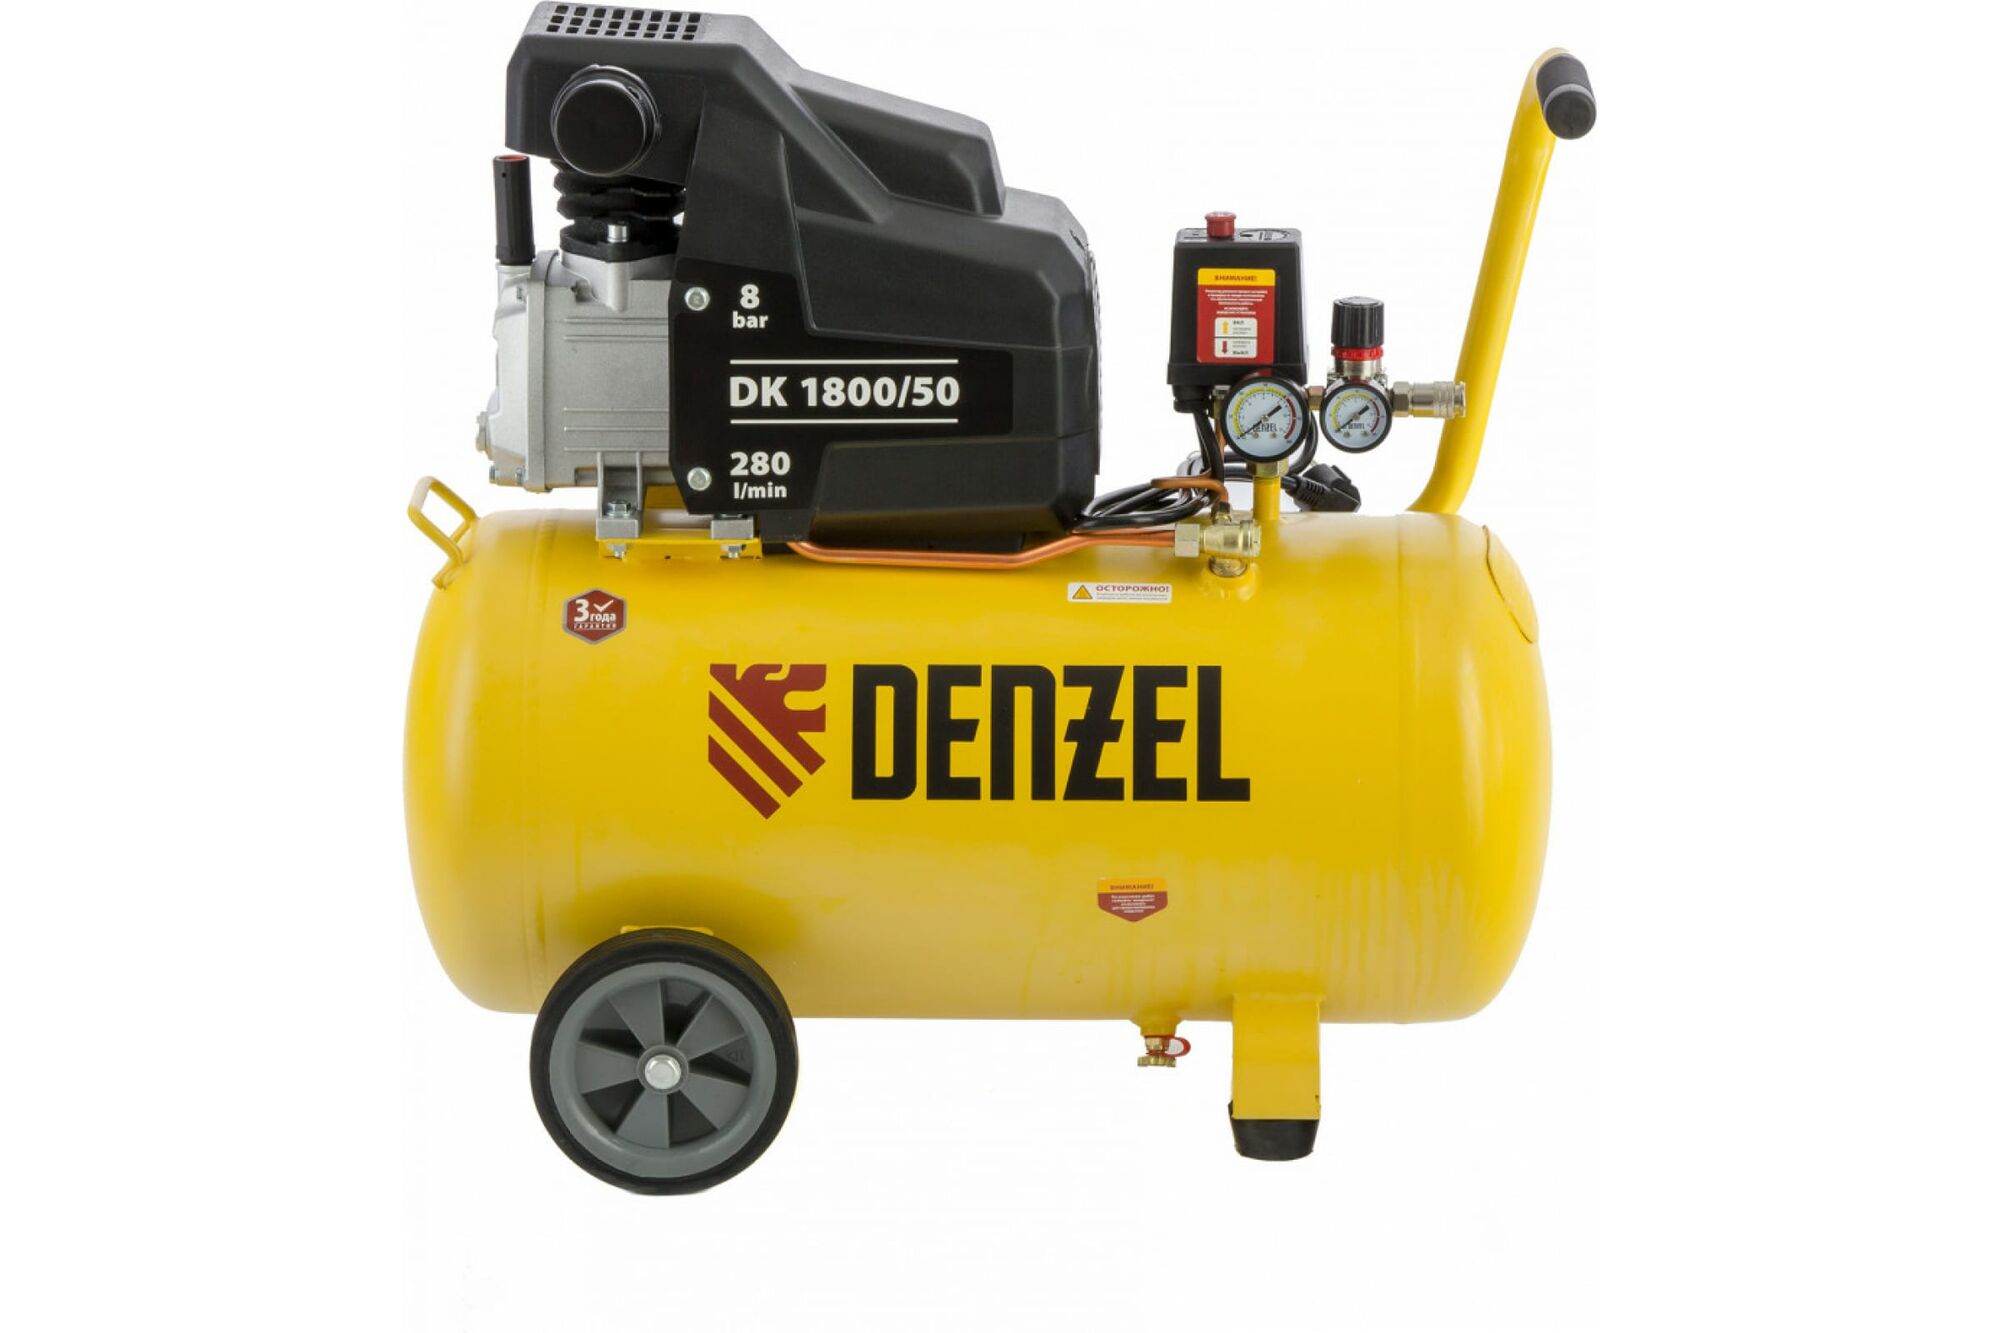 Воздушный компрессор DENZEL DK1800/50, Х-PRO 1,8 кВт, 280 л/мин, 50 л 58068 Denzel